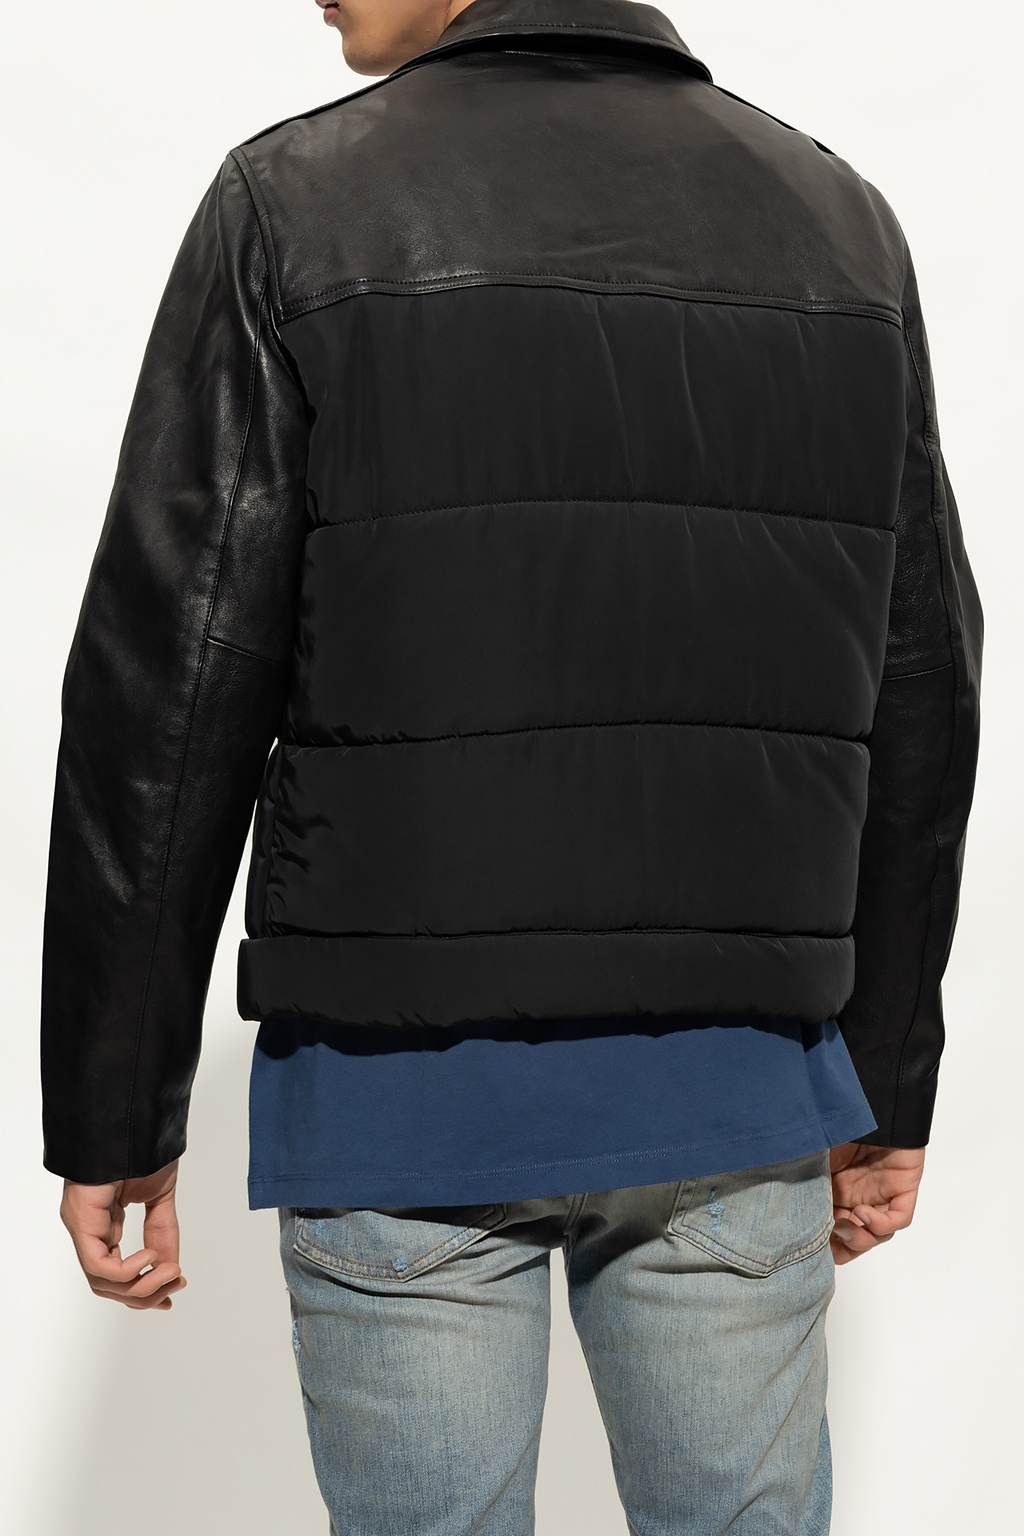 AllSaints ‘Jones’ jacket Jewel in contrasting fabrics